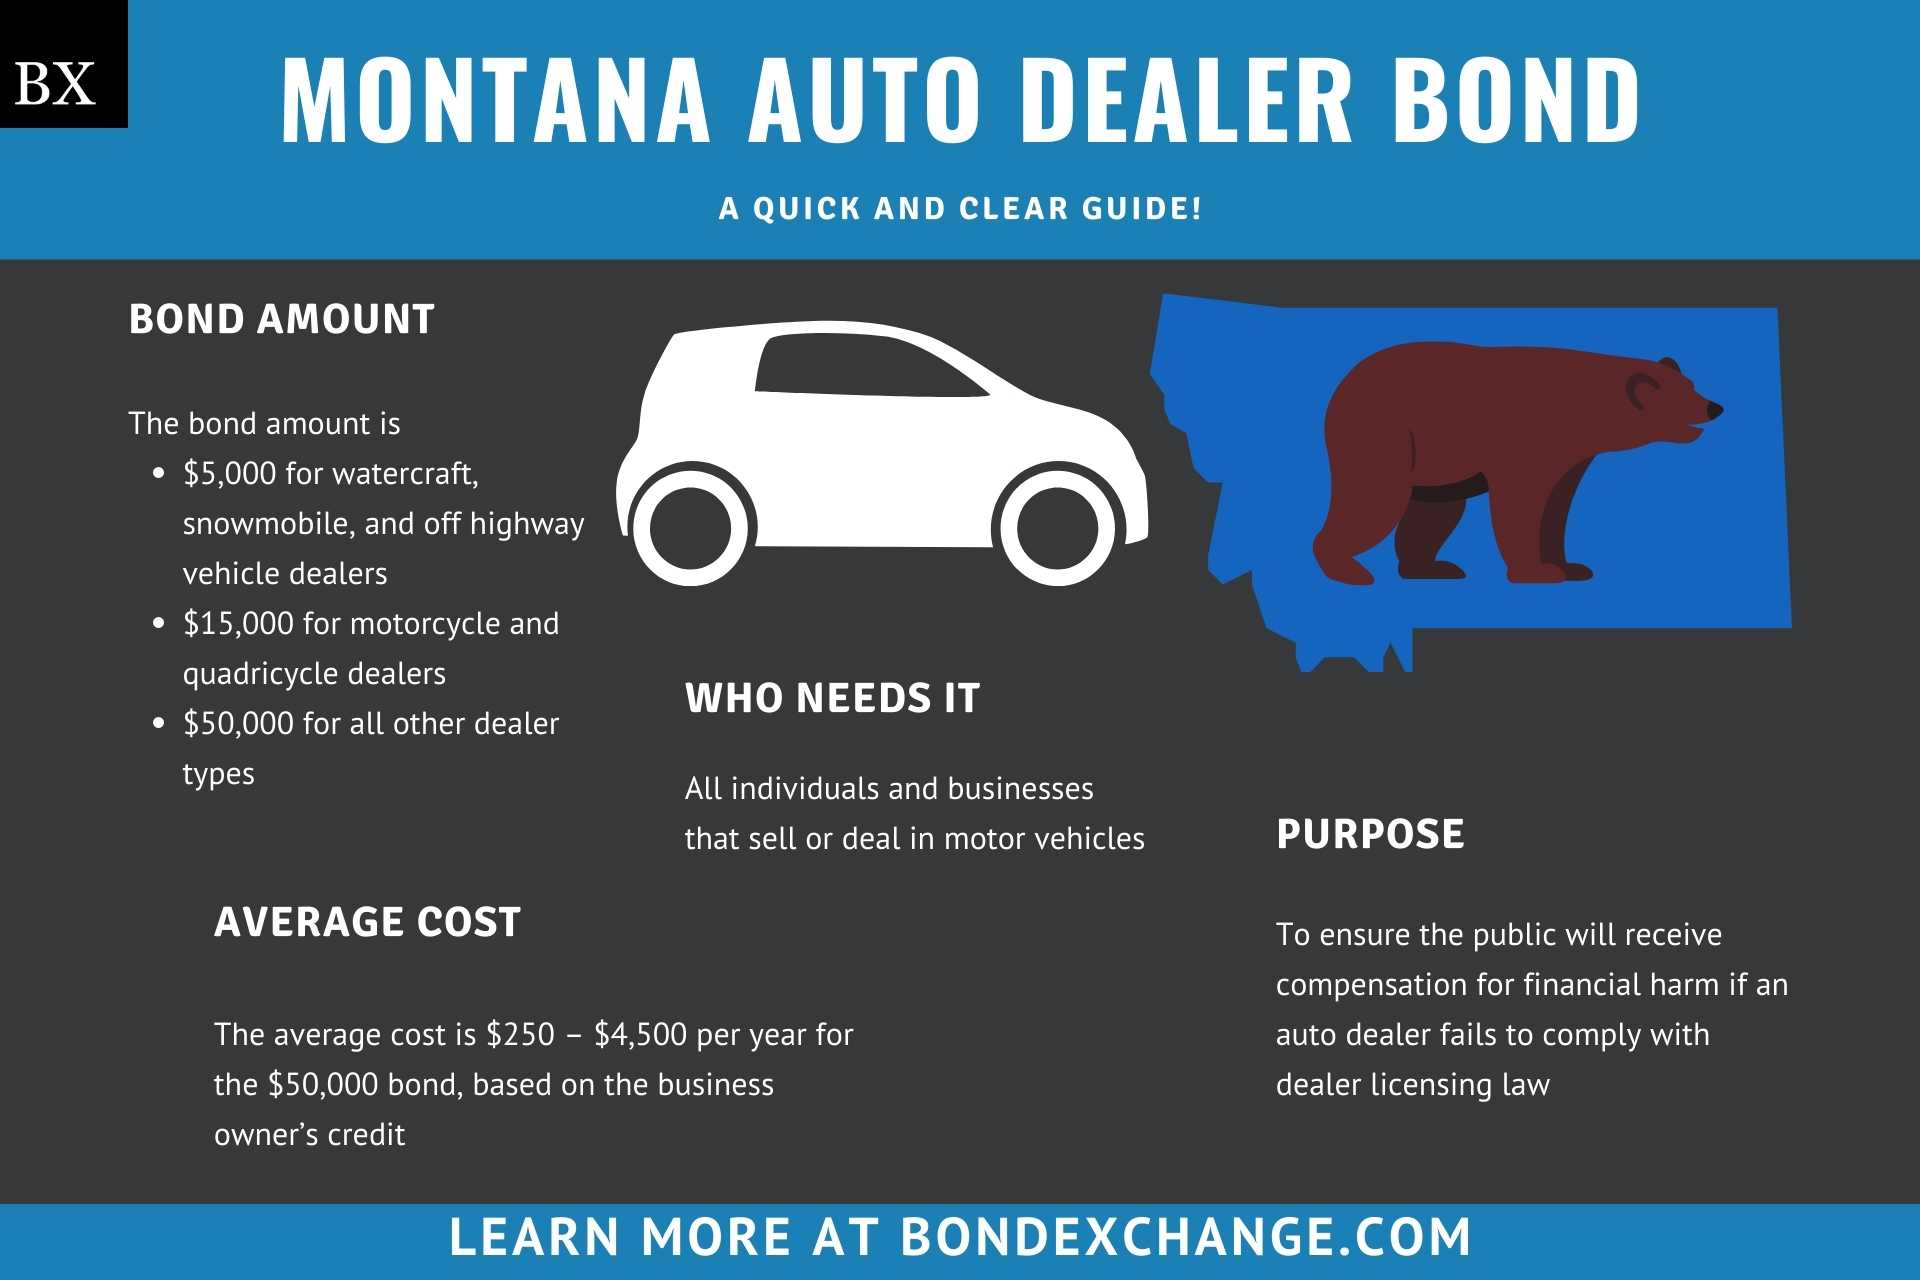 Montana Auto Dealer Bond